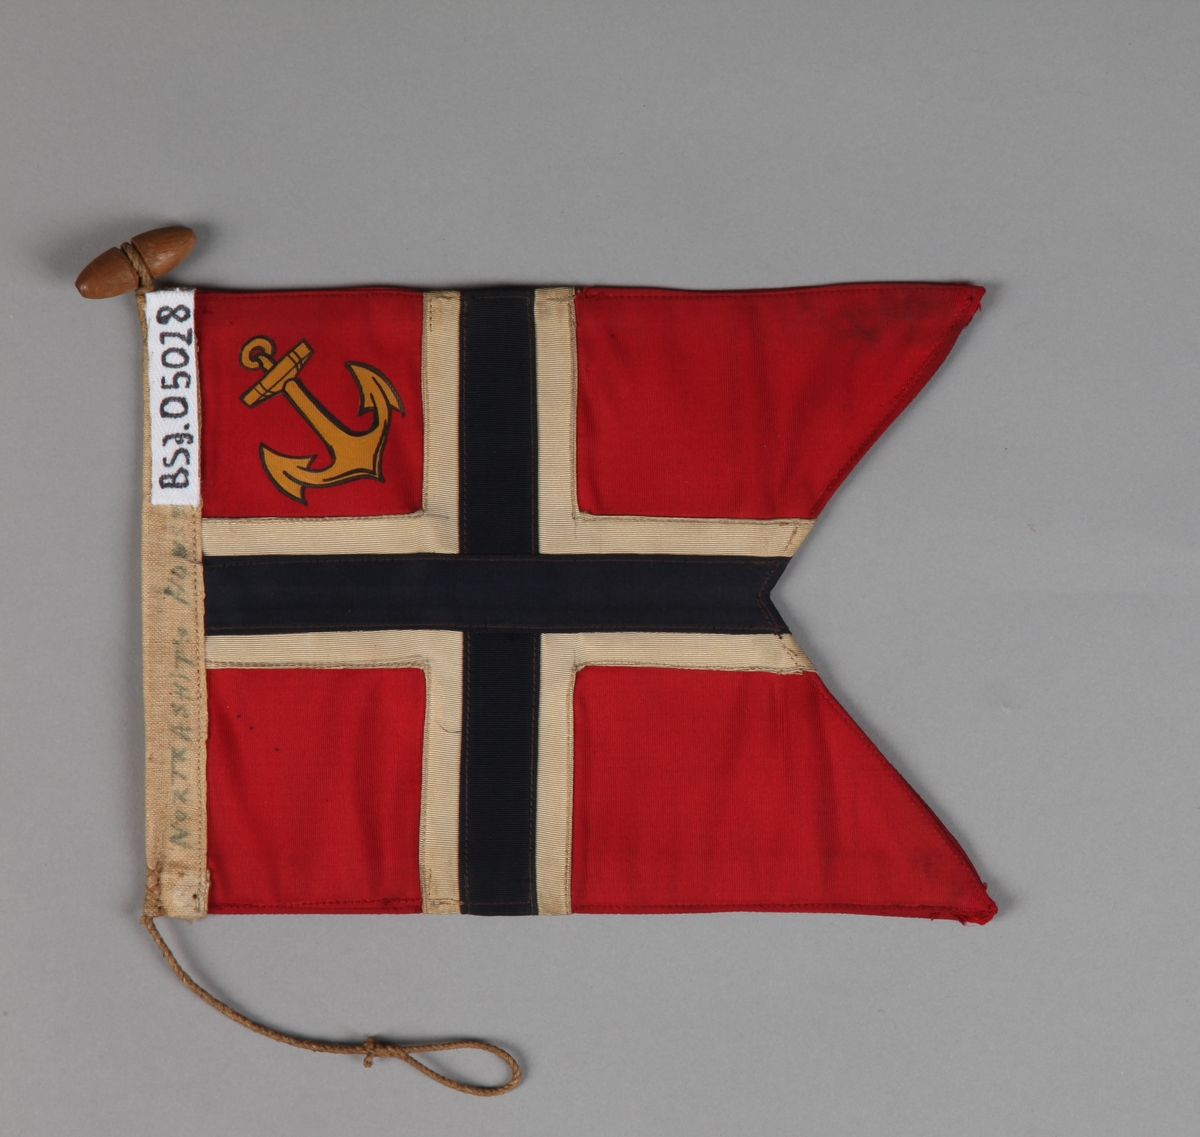 Norsk orlogsflagg uten tunge med gult anker i øverste felt nærmest stangen.